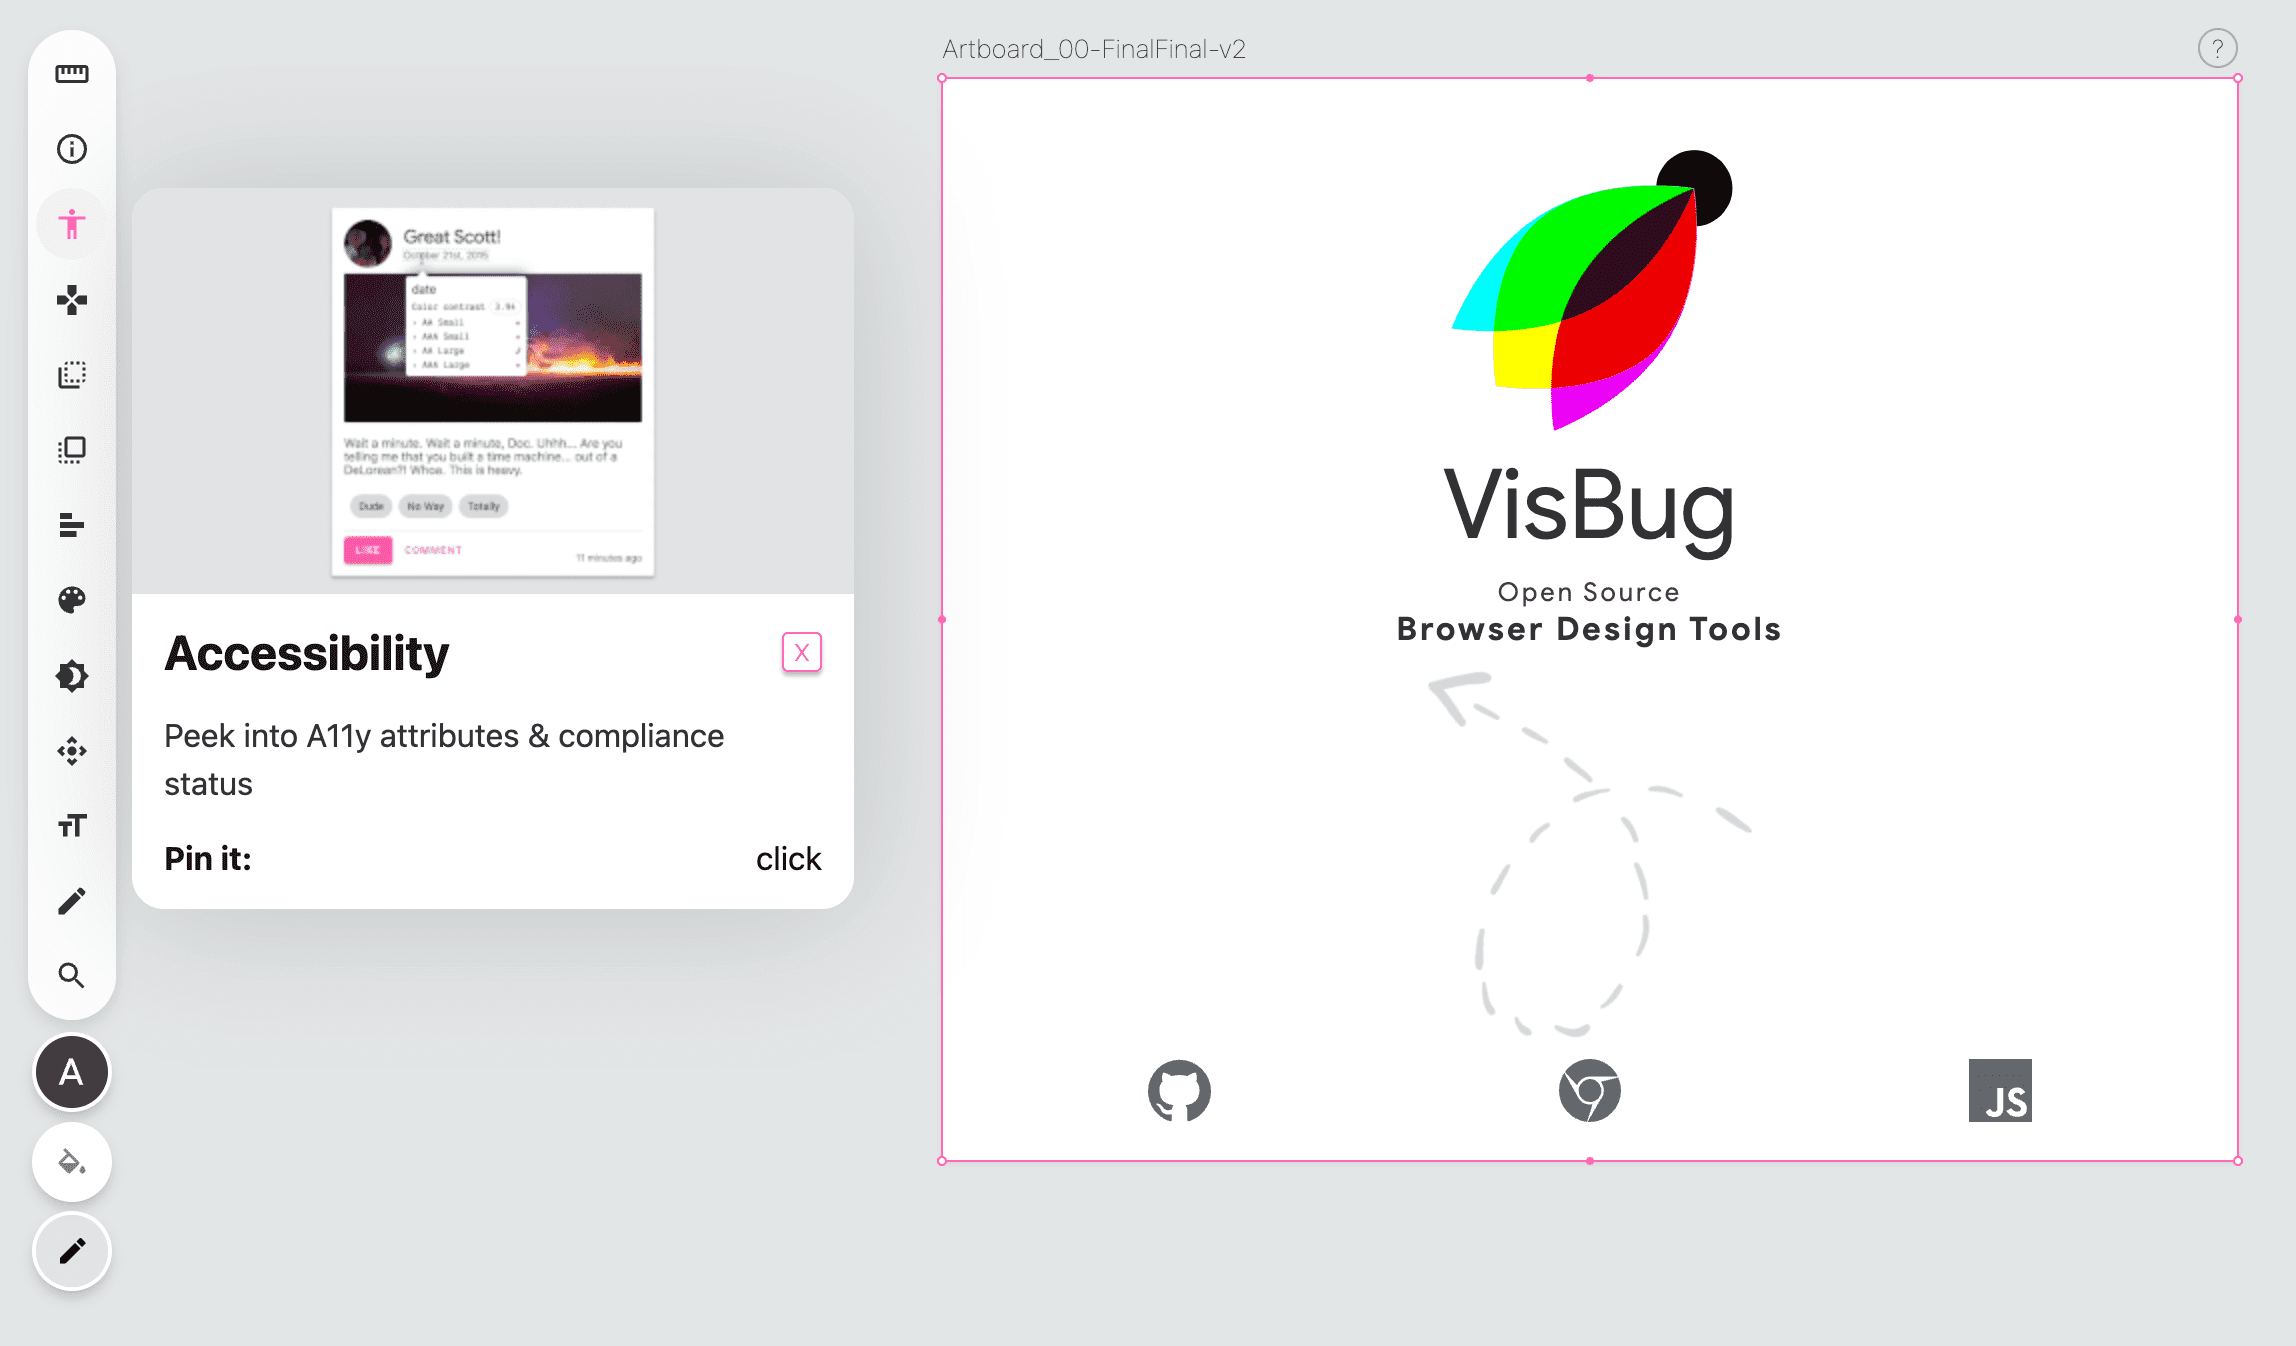 Captura de tela da barra de ferramentas do VisBug no lado esquerdo de uma página em branco. O ícone da ferramenta de acessibilidade está em rosa e aparece um pop-up que fornece instruções sobre a ferramenta.